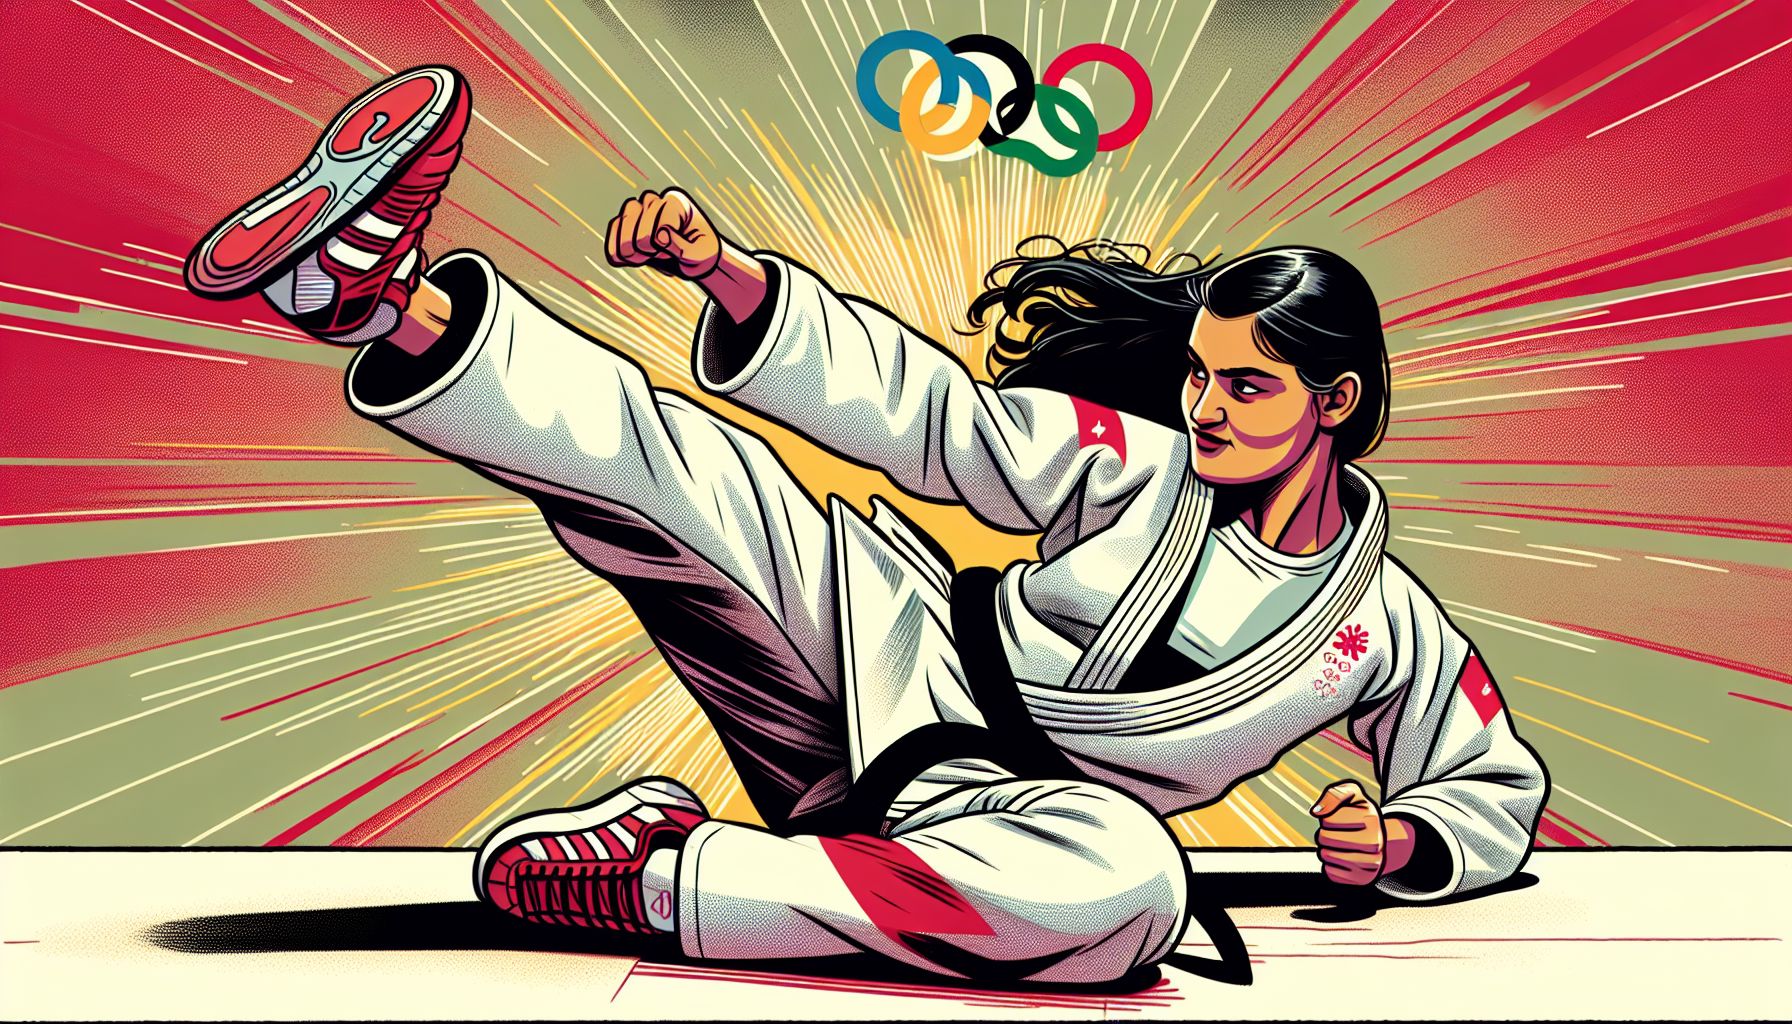 van vluchteling tot olympisch judoka: muna's ongelooflijke reis